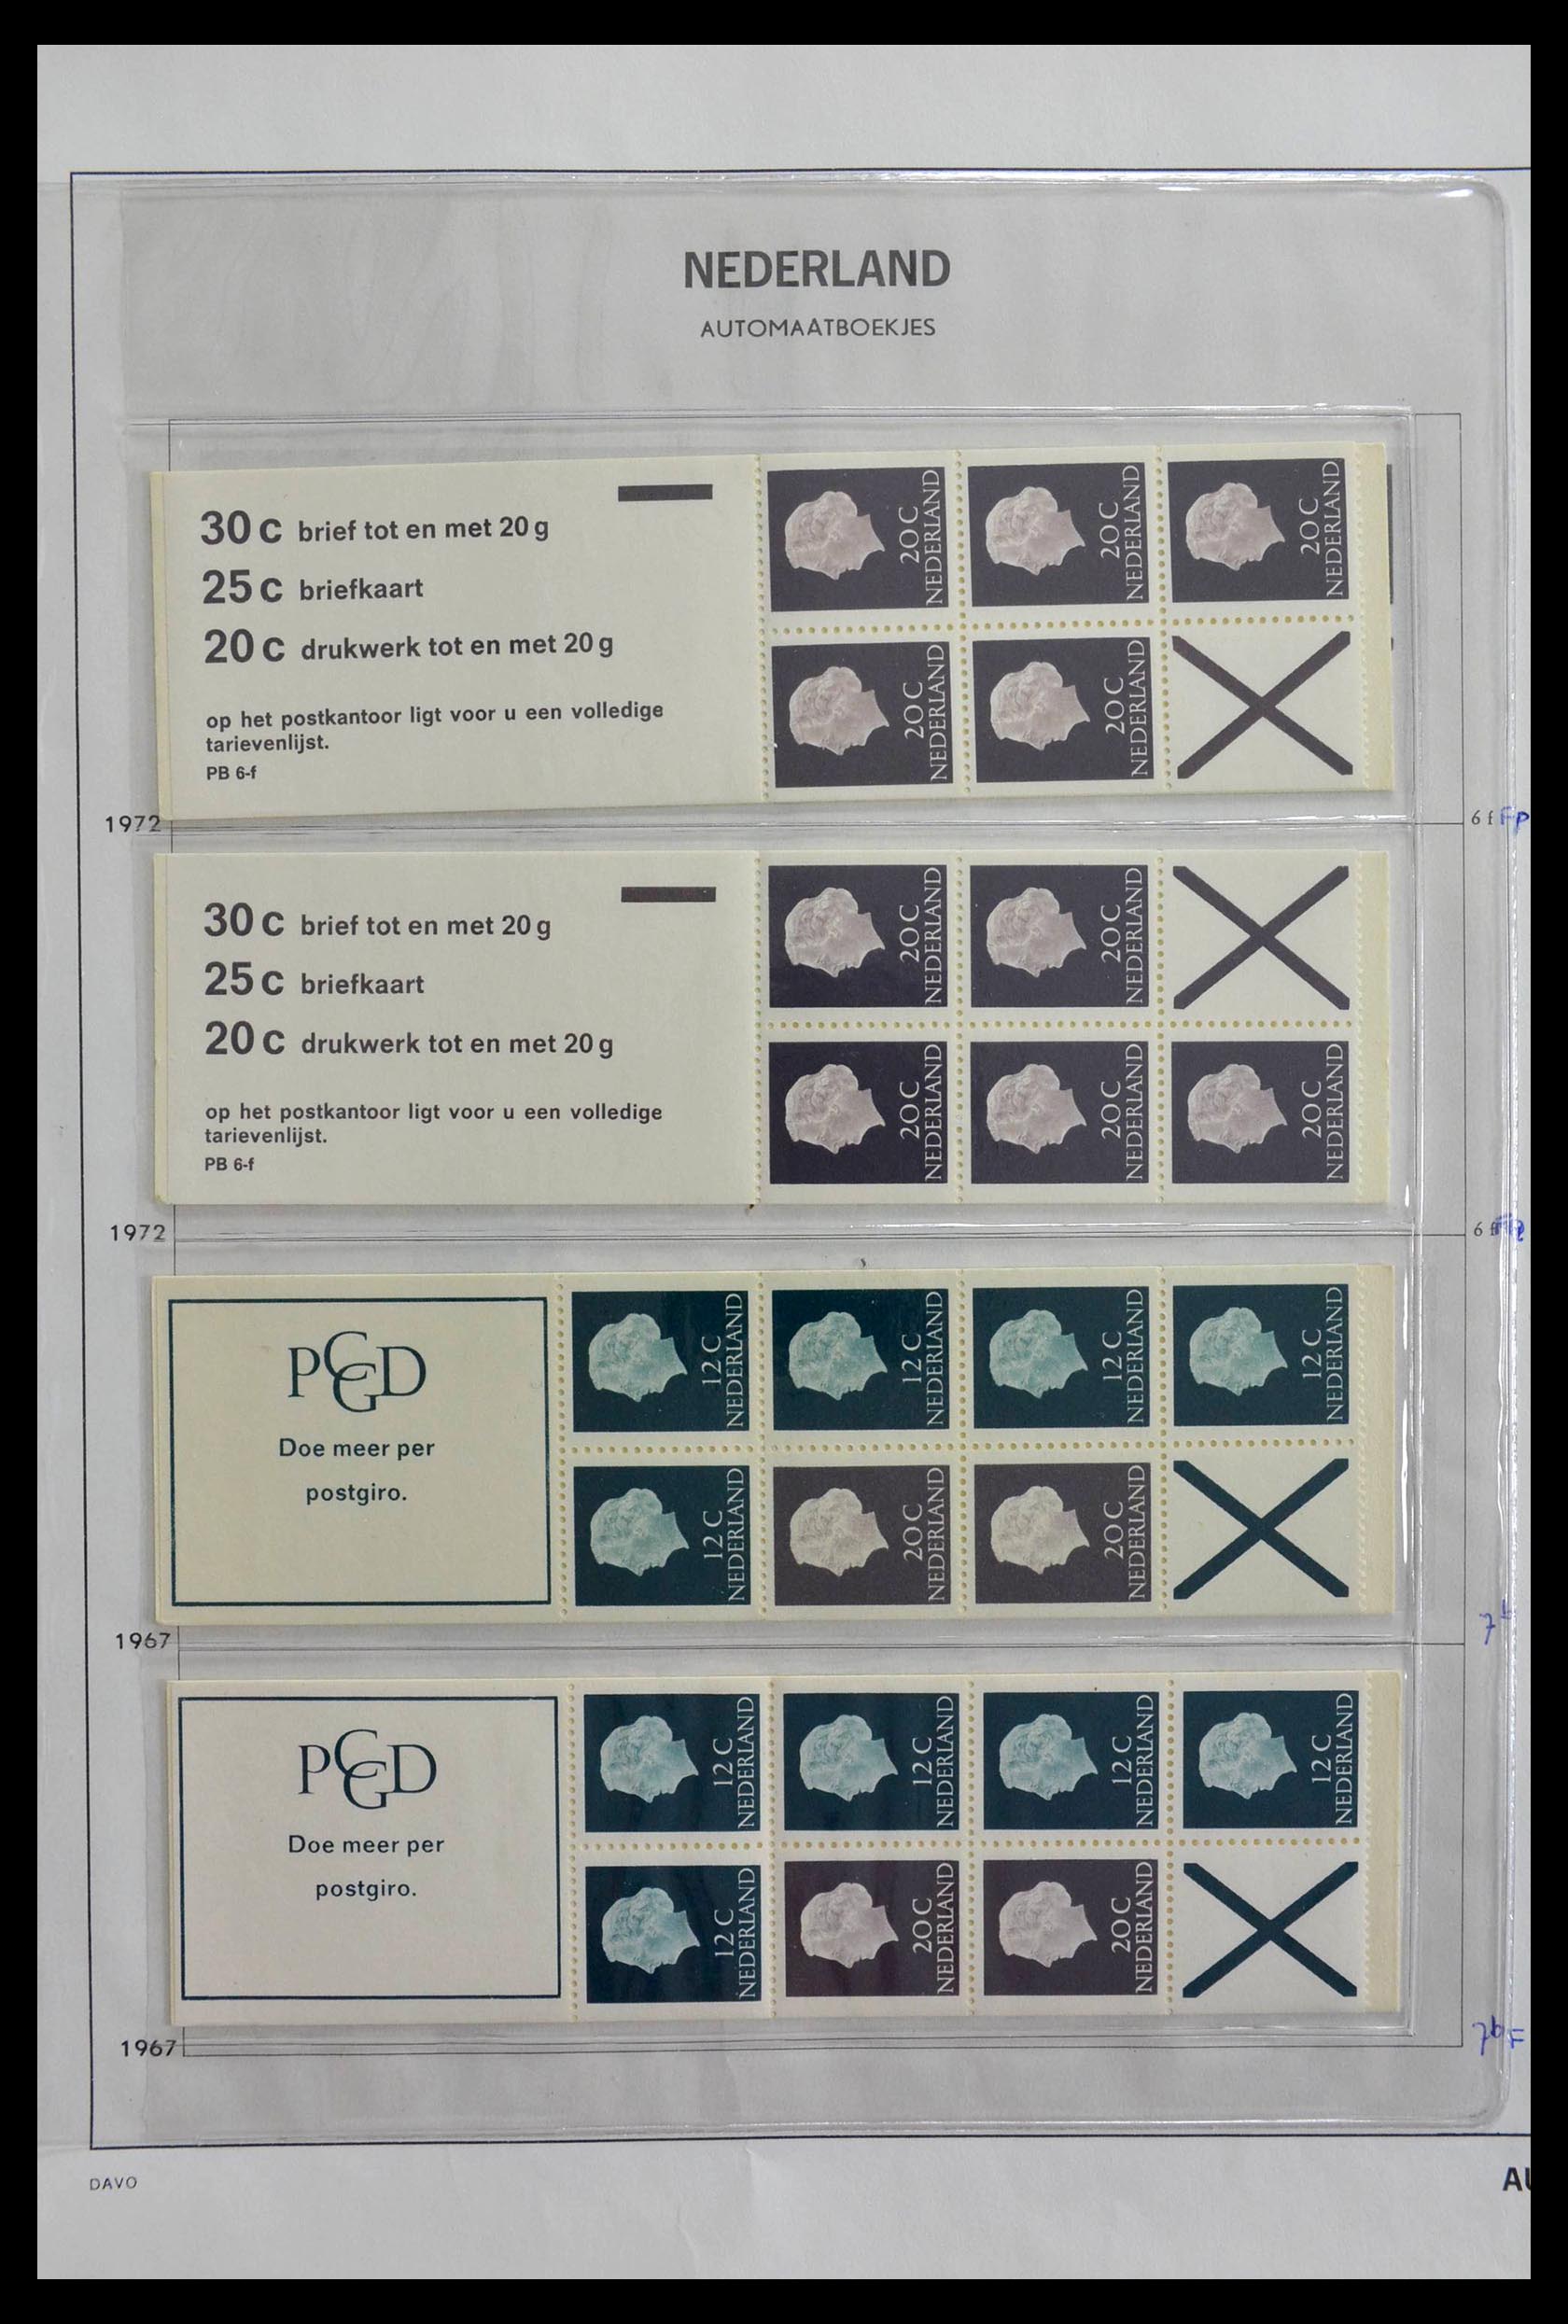 28853 004 - 28853 Netherlands stampbooklets 1964-2005.